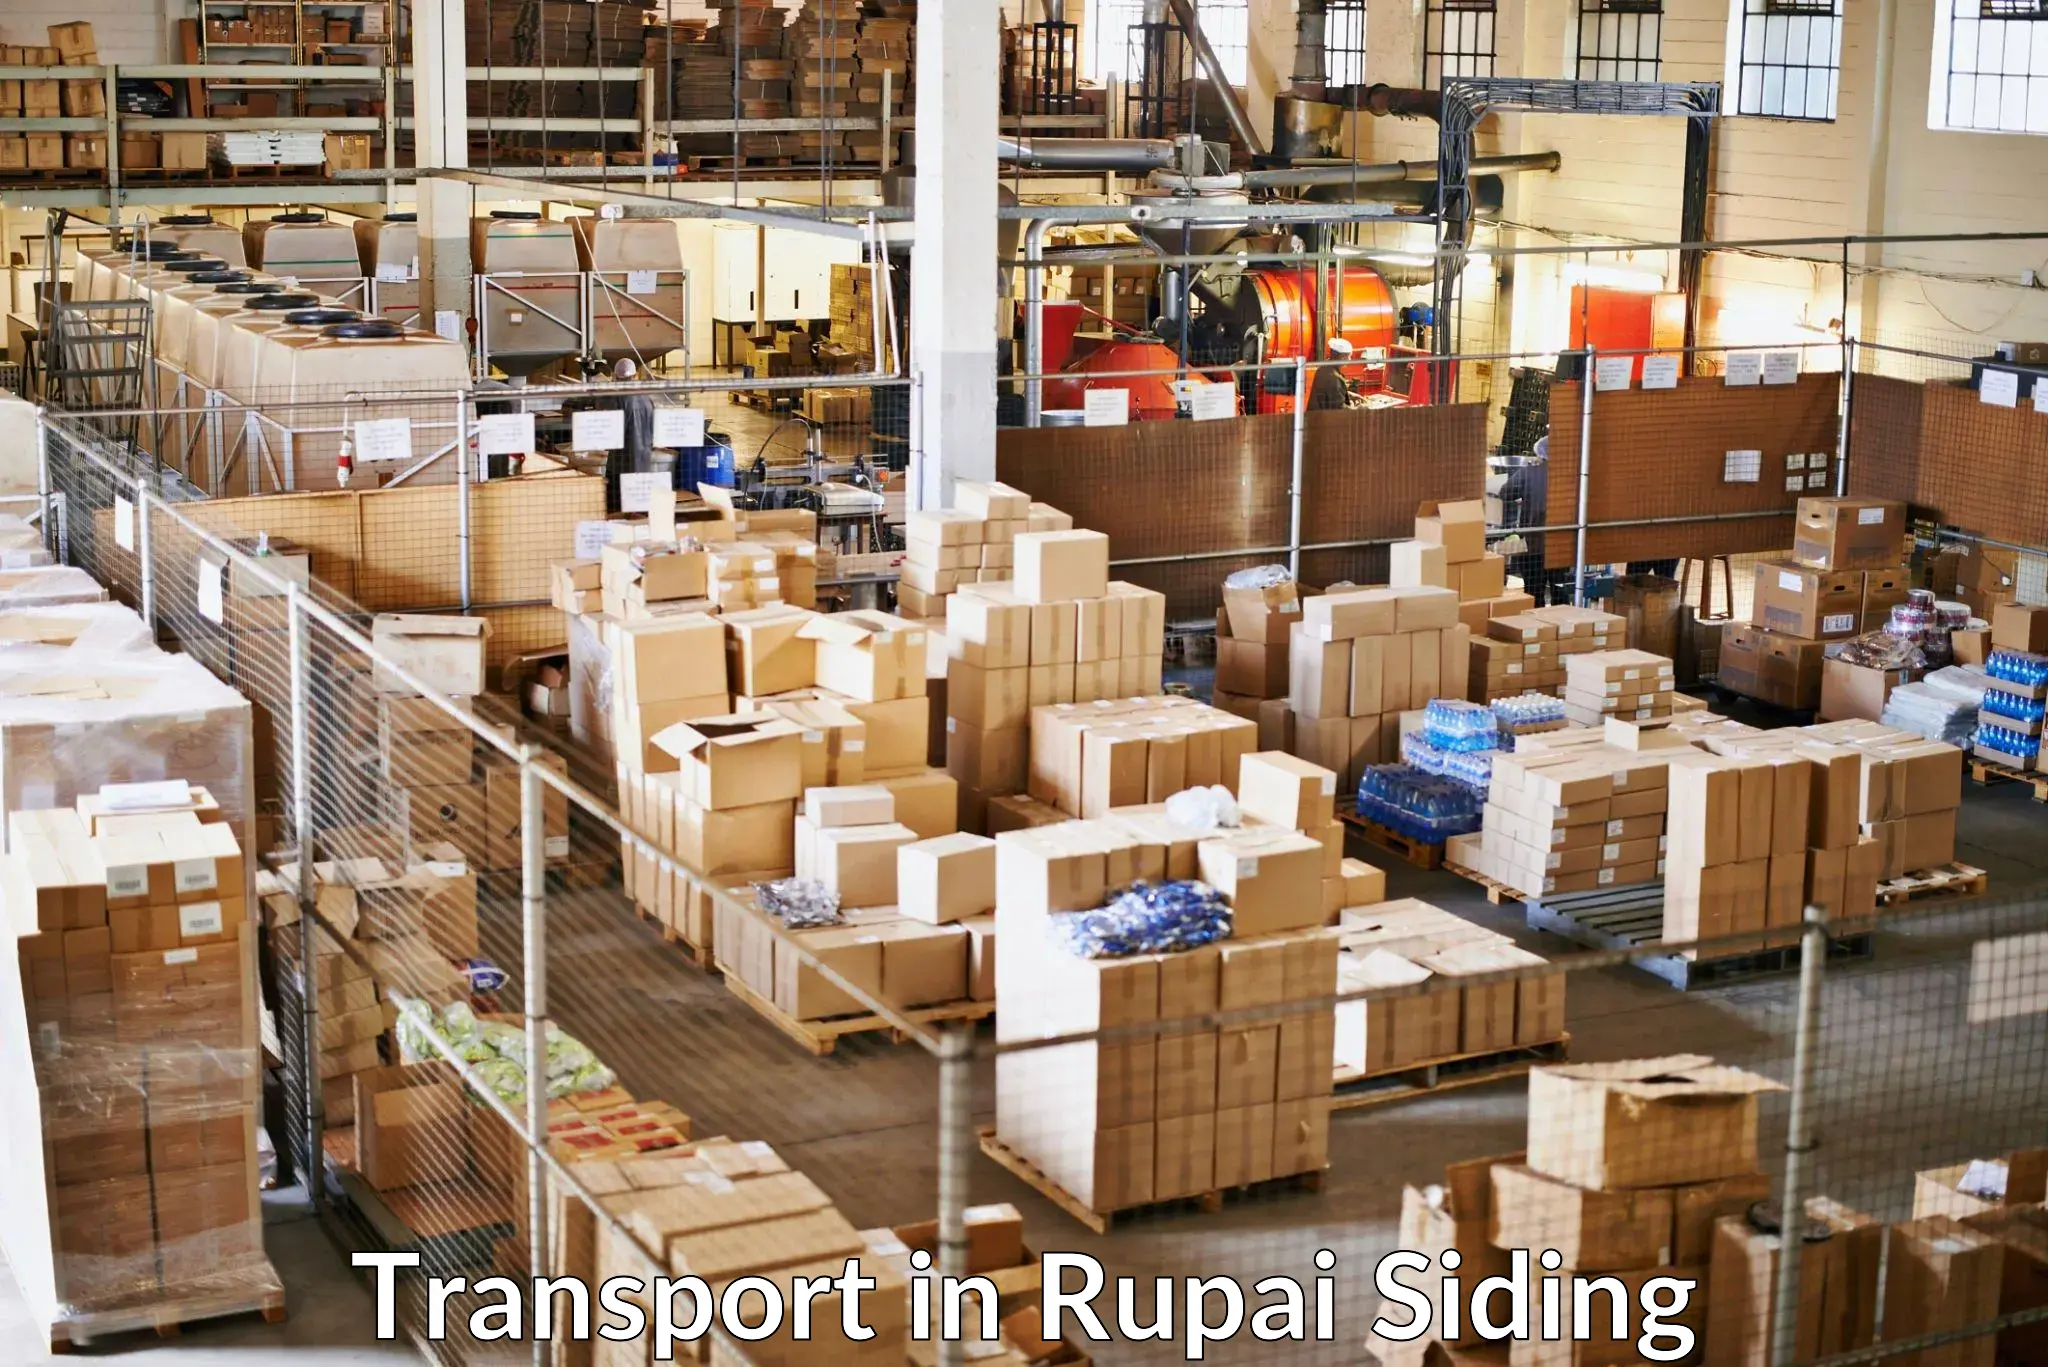 Furniture transport service in Rupai Siding